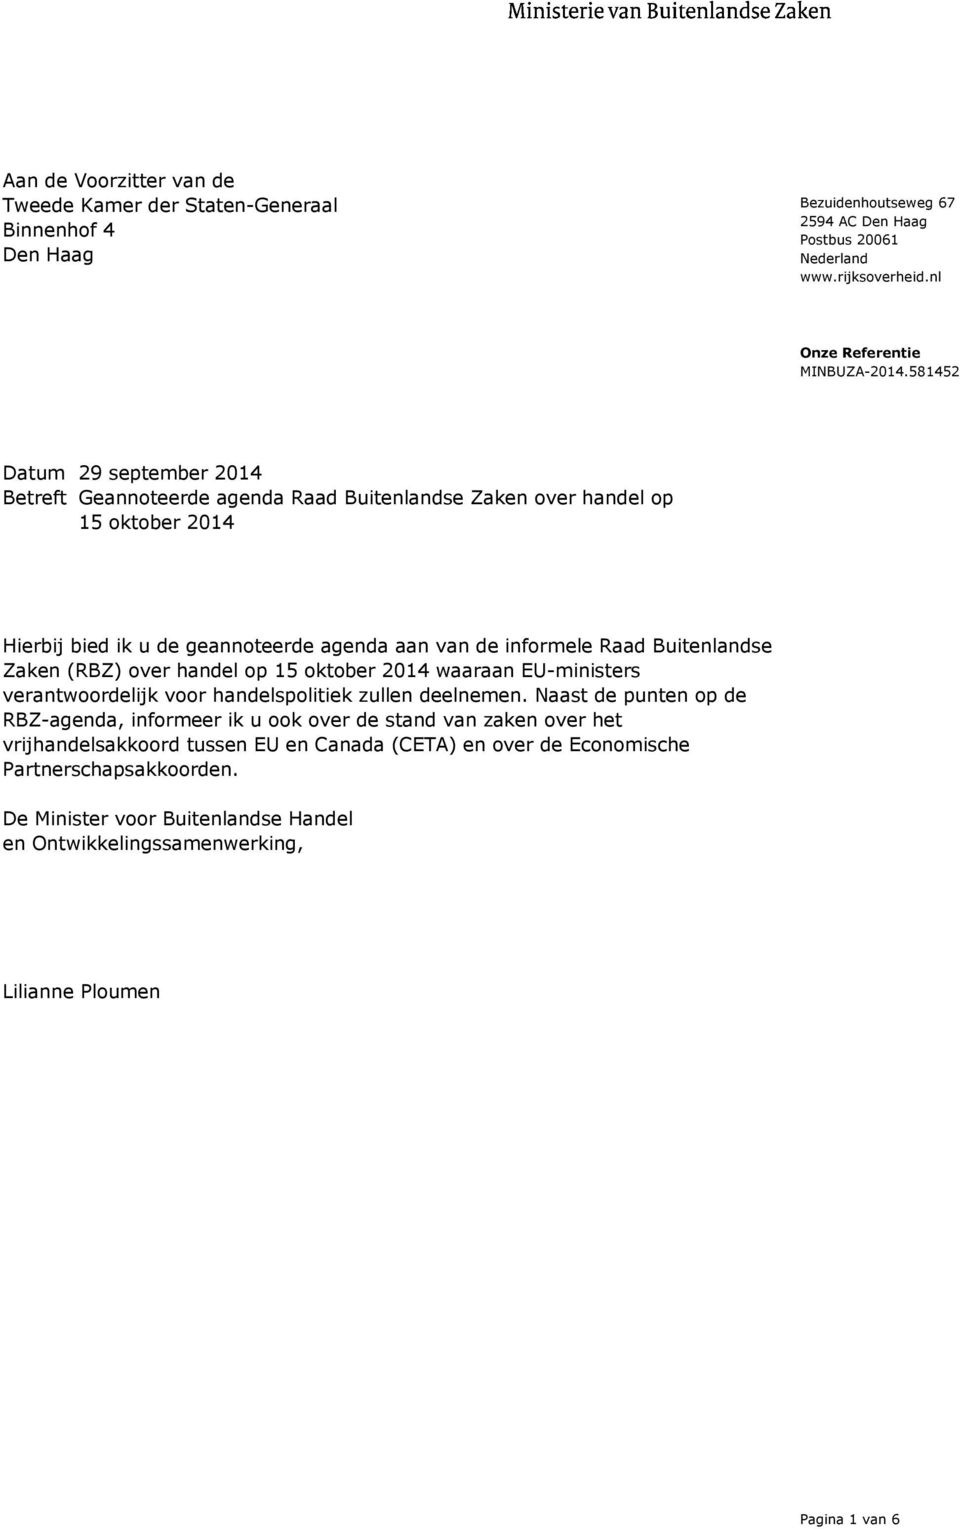 Zaken (RBZ) over handel op 15 oktober 2014 waaraan EU-ministers verantwoordelijk voor handelspolitiek zullen deelnemen.